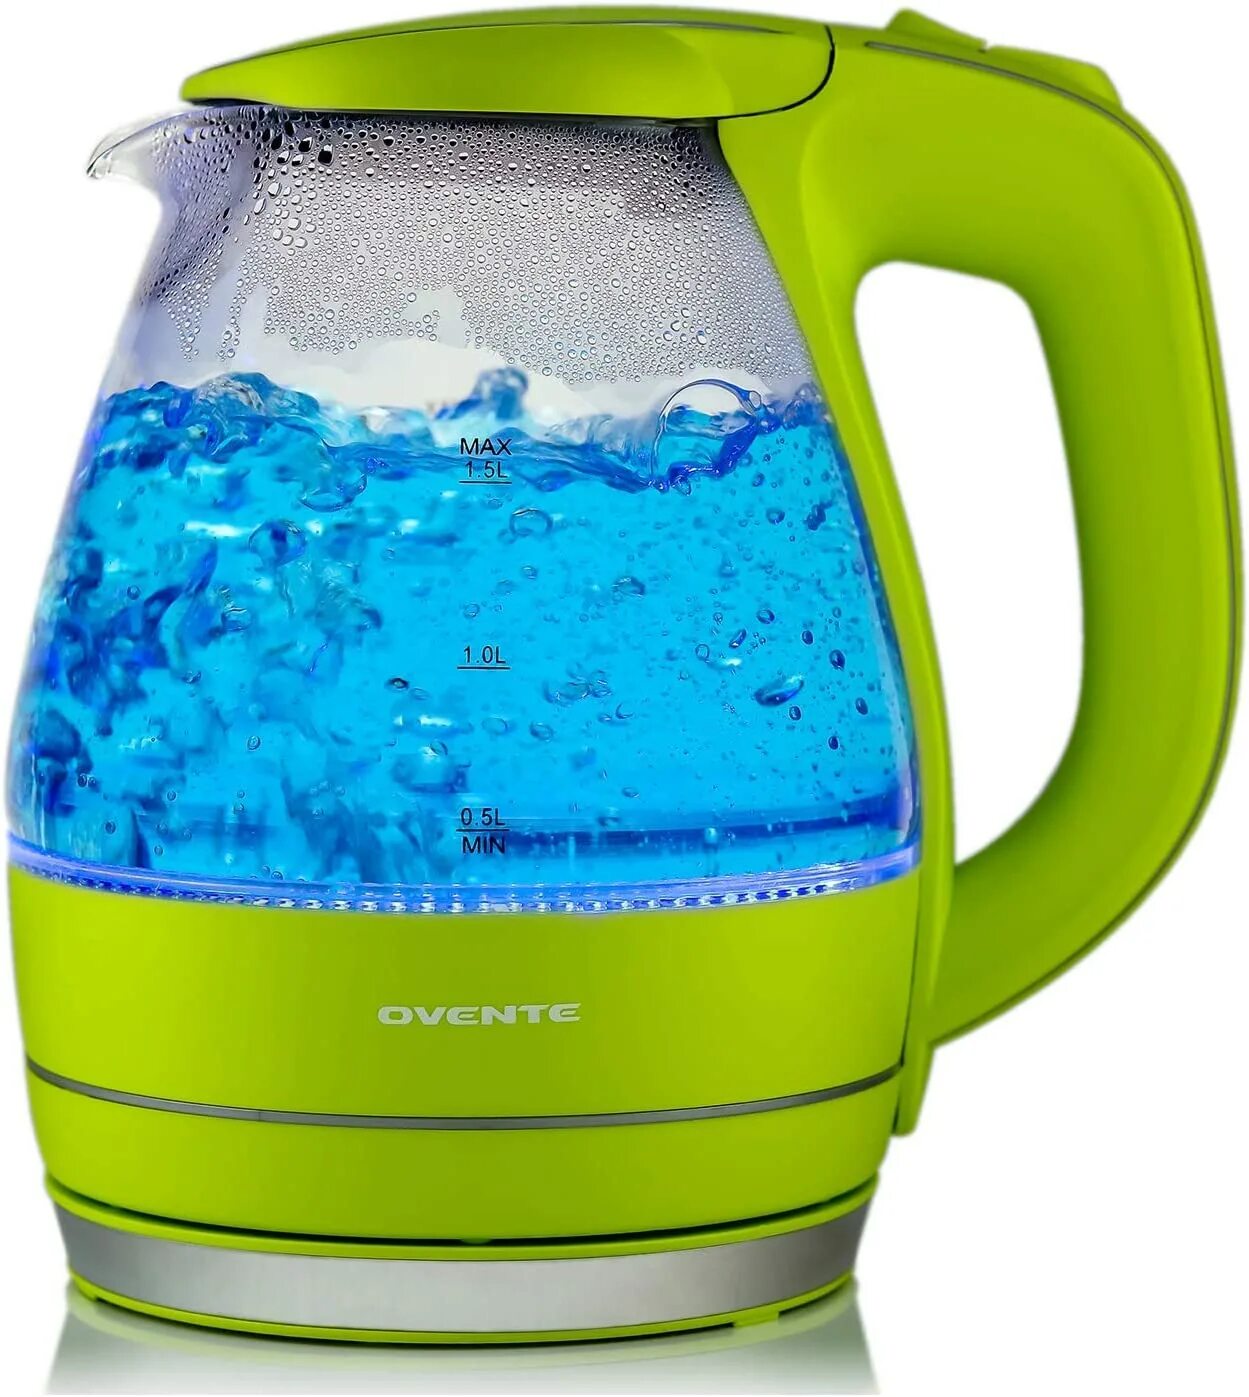 DEXP dw1500 зеленый чайник. Чайник электрический стеклянный салатовый. Электрический чайник зеленого цвета. Чайник с зеленым стеклом электрический. Зеленые чайники купить